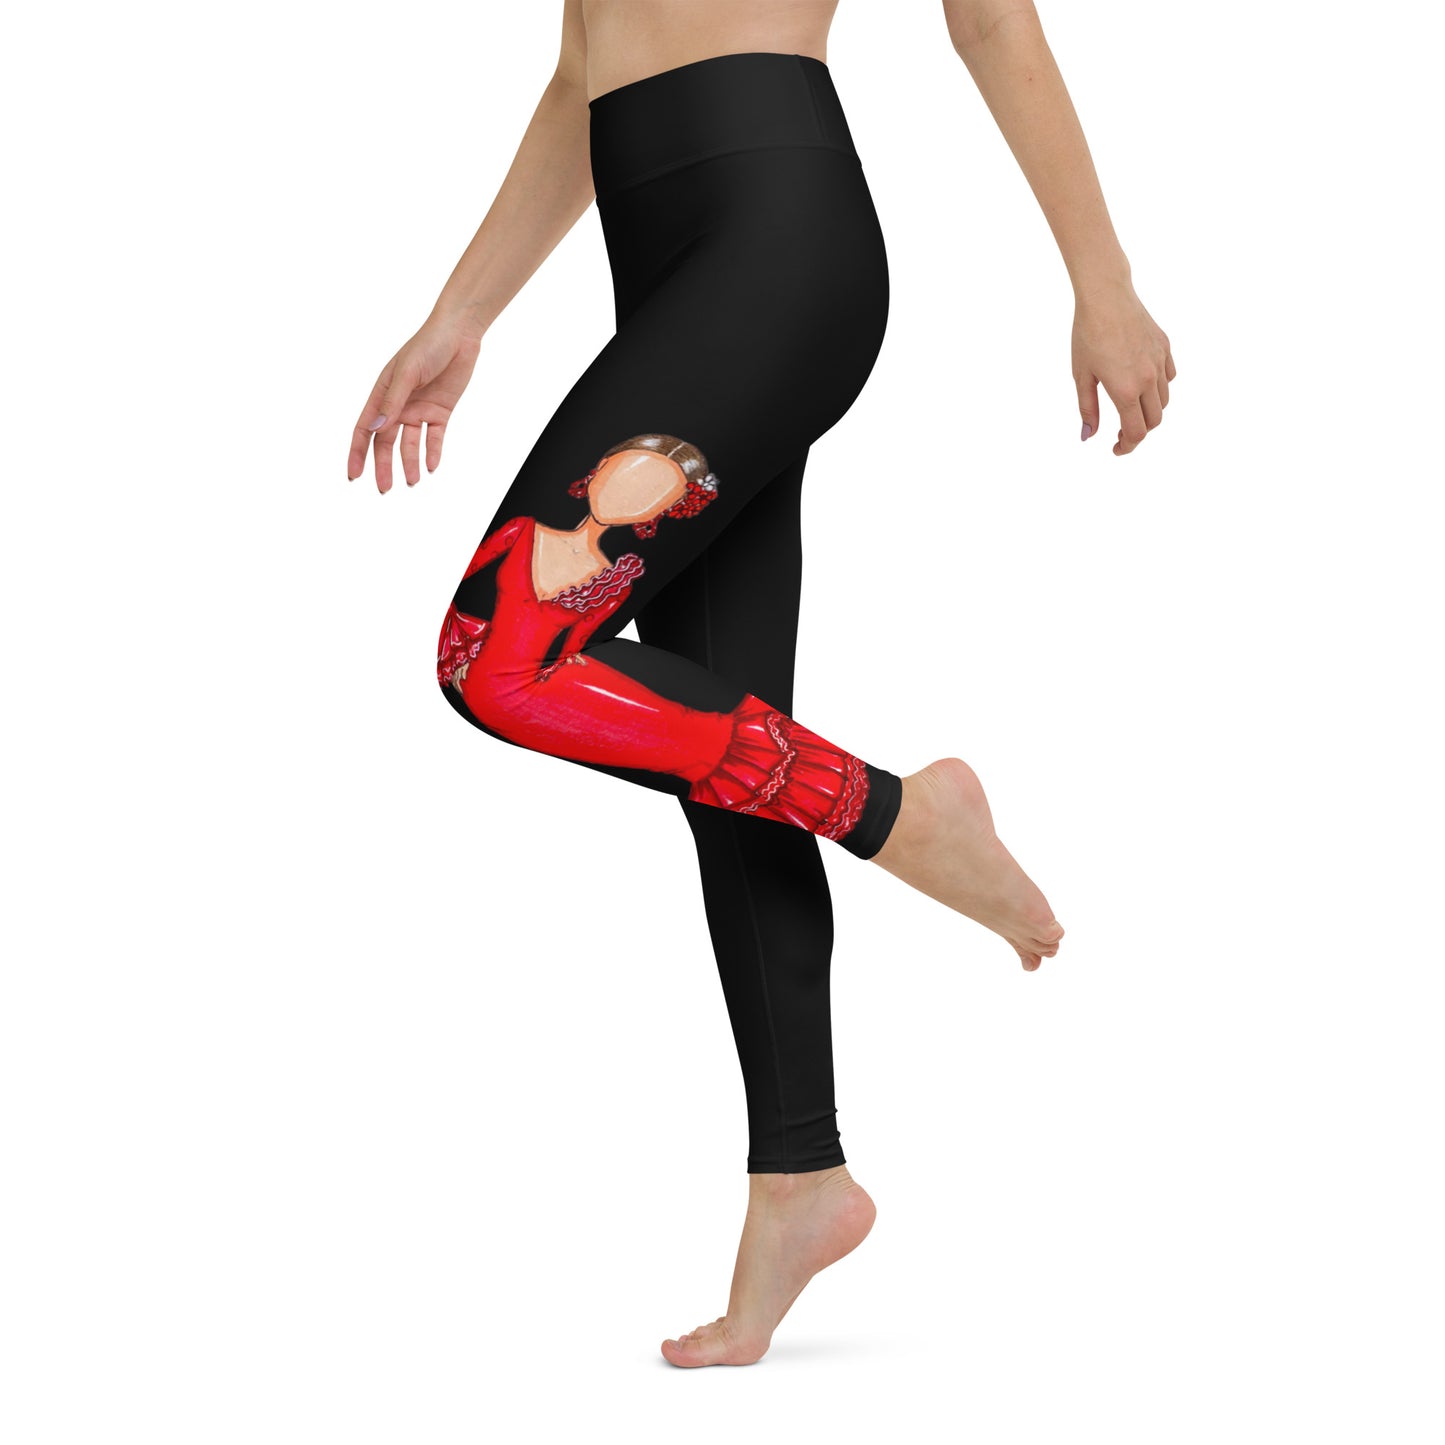 Flamenco Dancer Leggings, black high waisted yoga leggings with a red dress design - IllustrArte